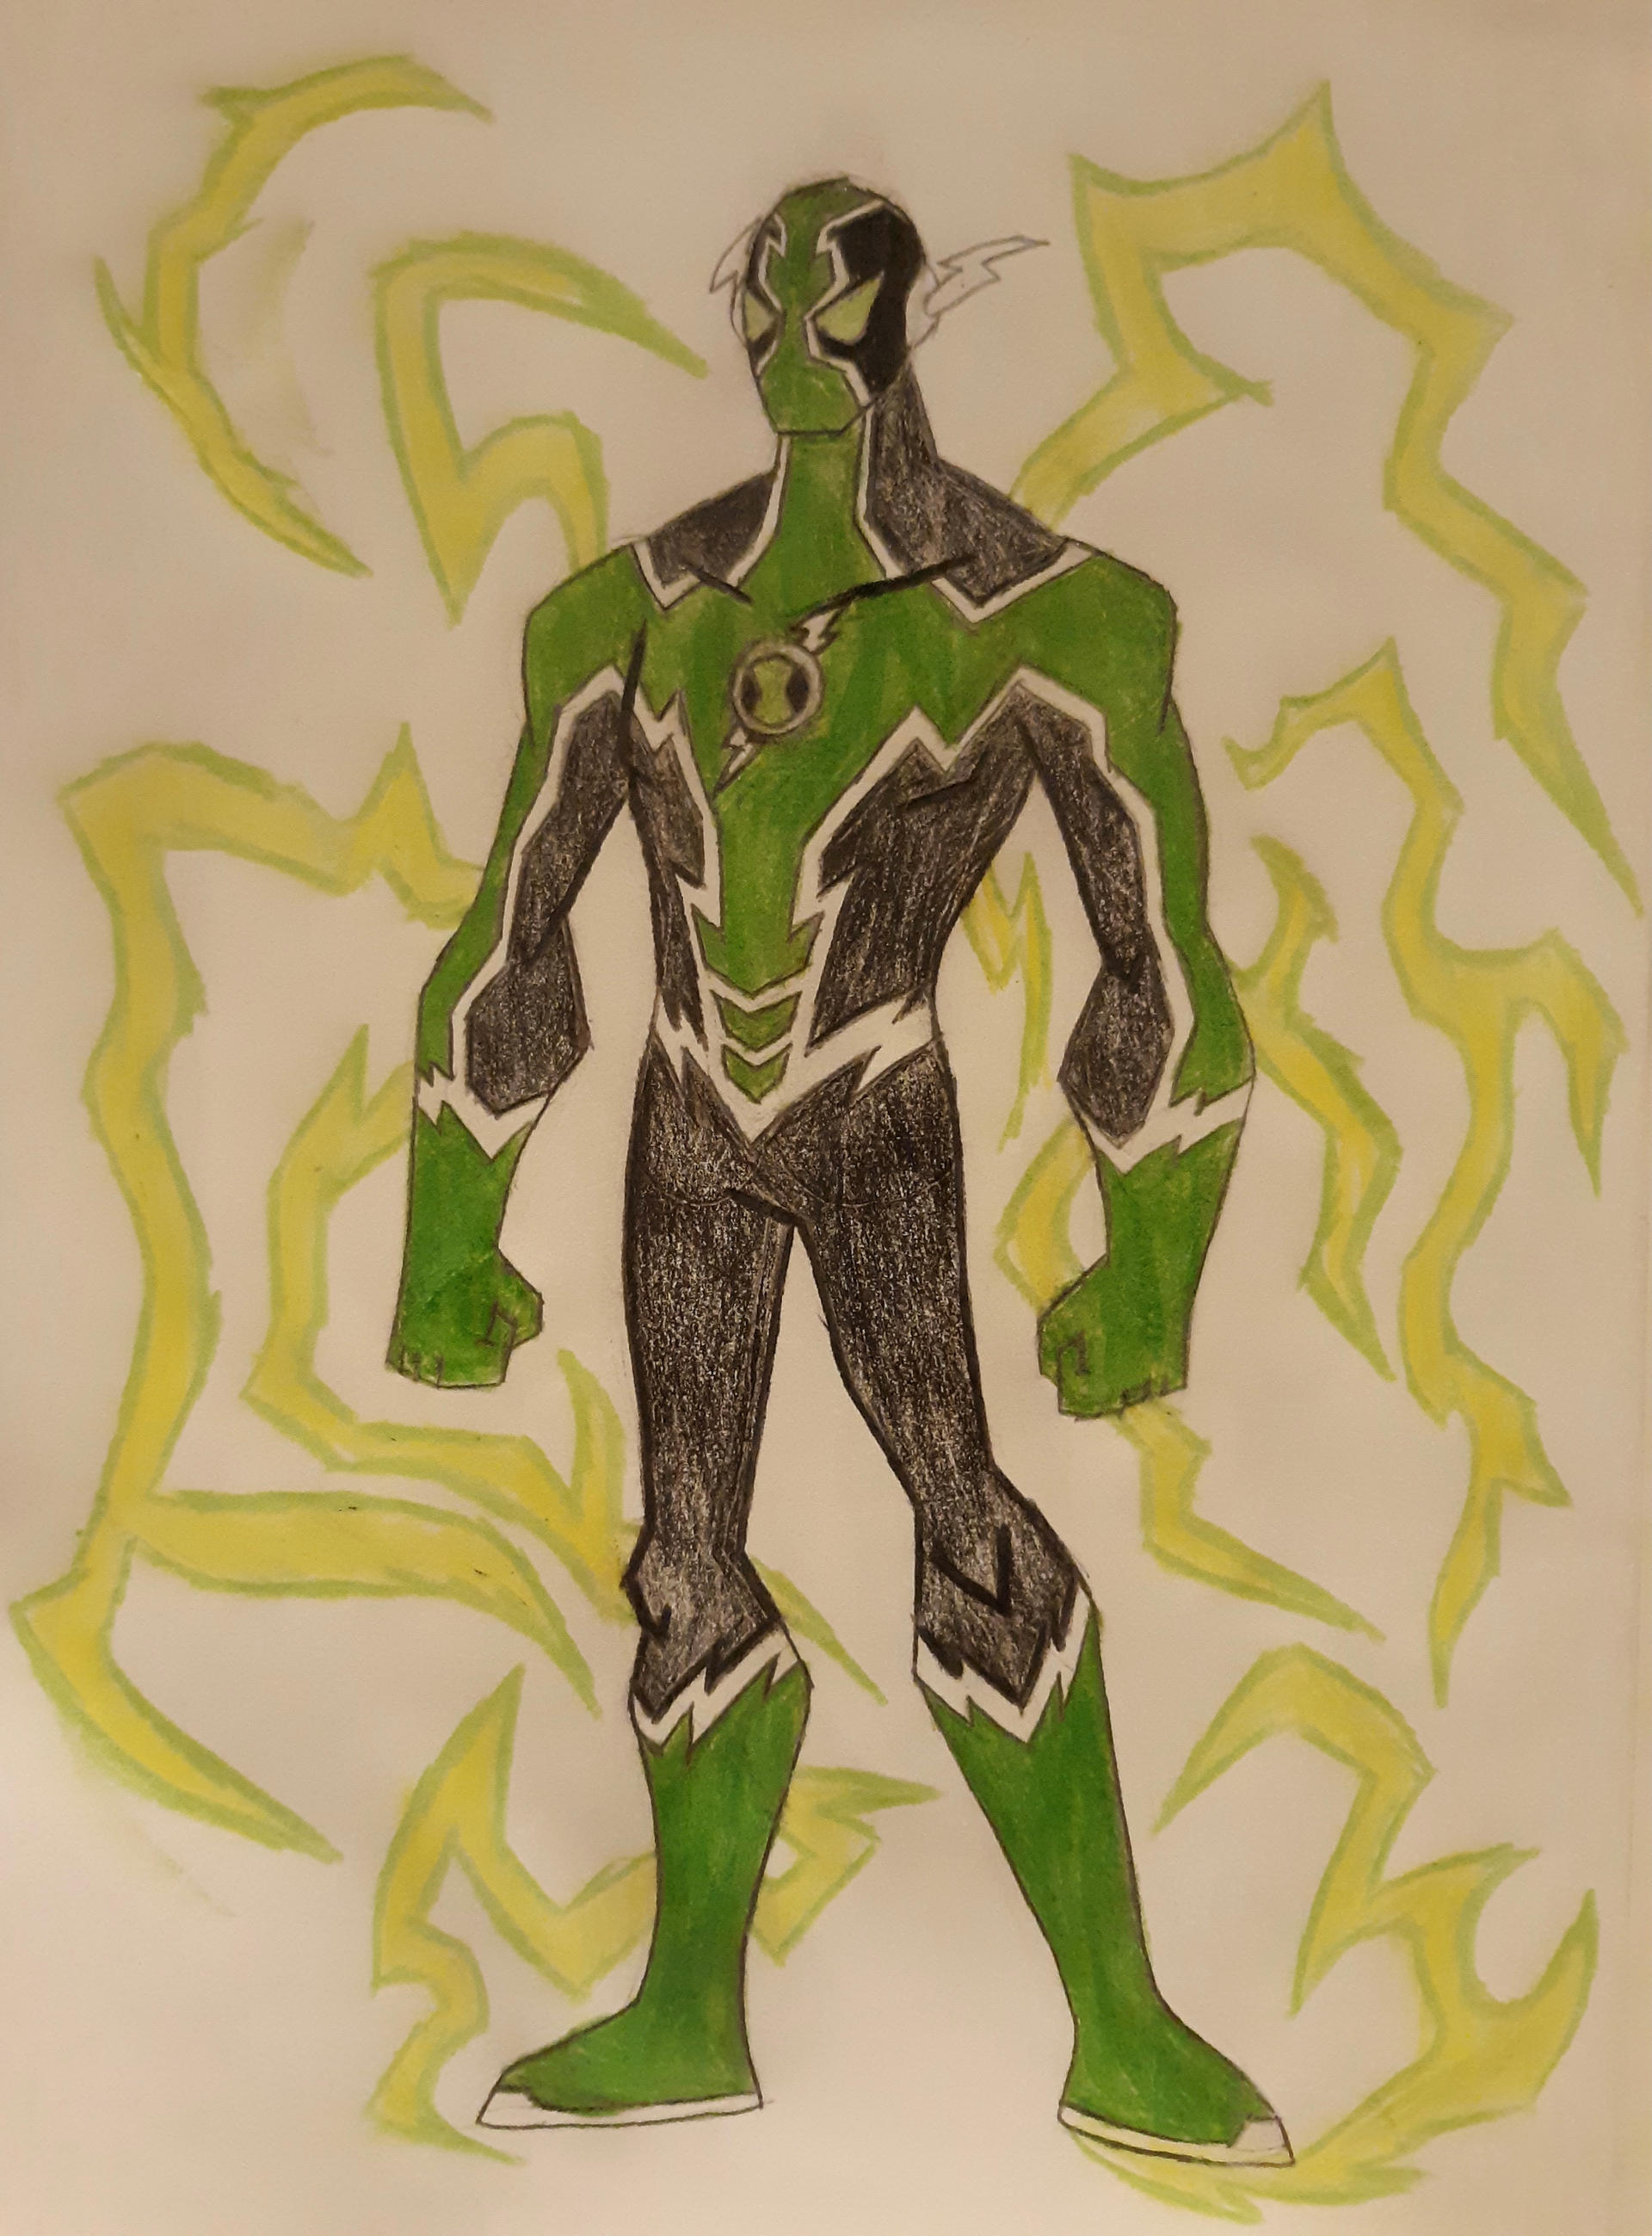 Tutorial speed drawing Alien X, Ben 10: Alien Force - tutorial como de